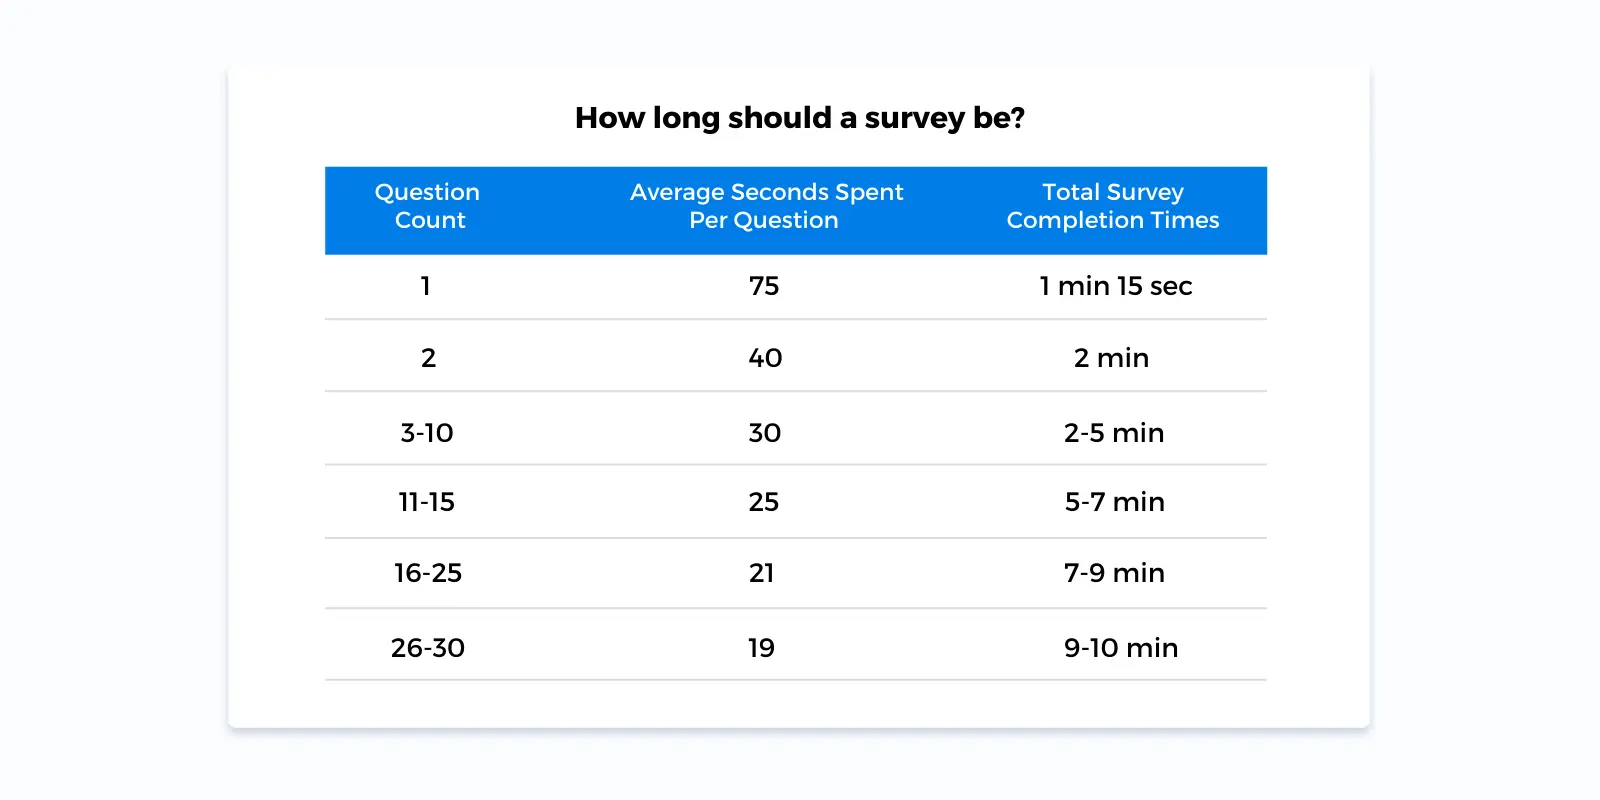 How long should a survey be